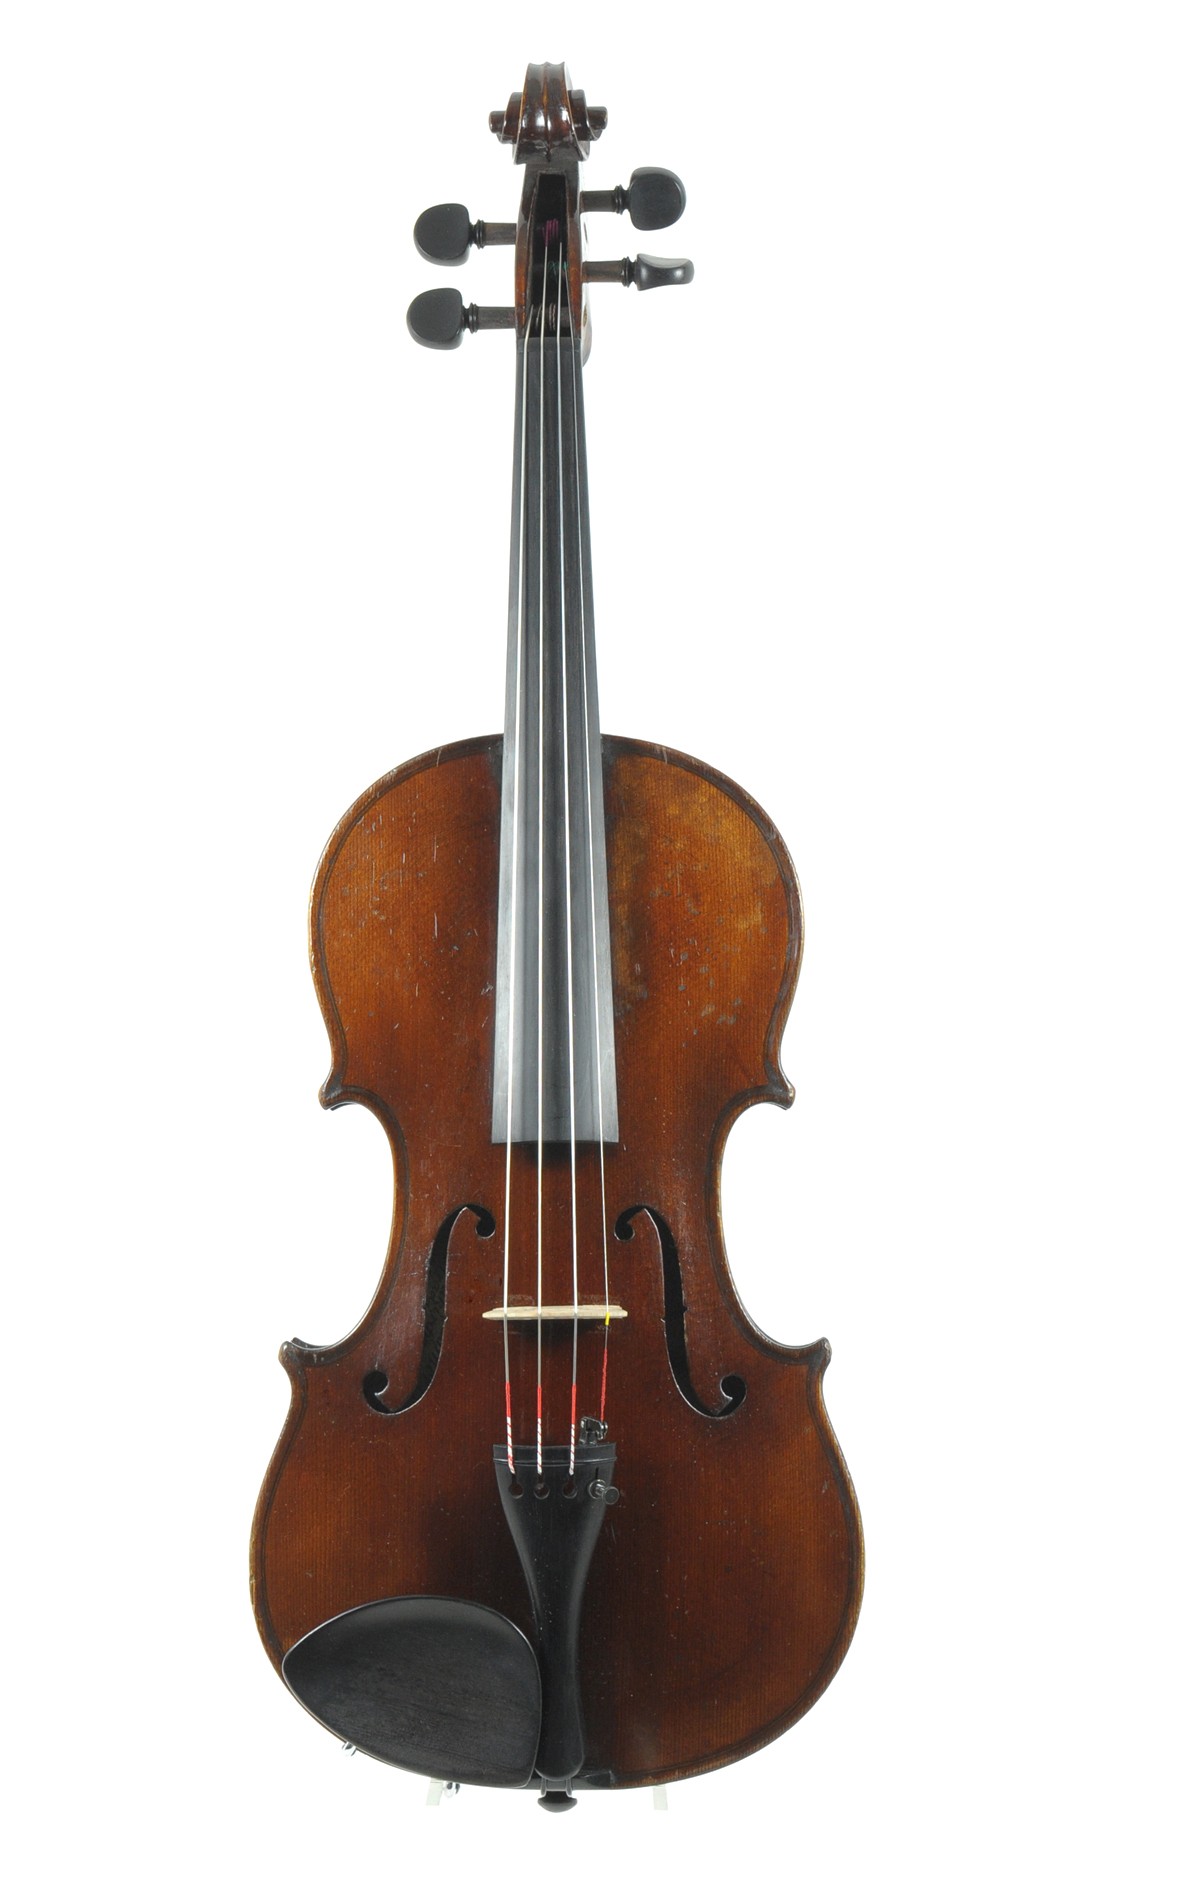 Markneukirchen violin by Bruno Pfretzschner